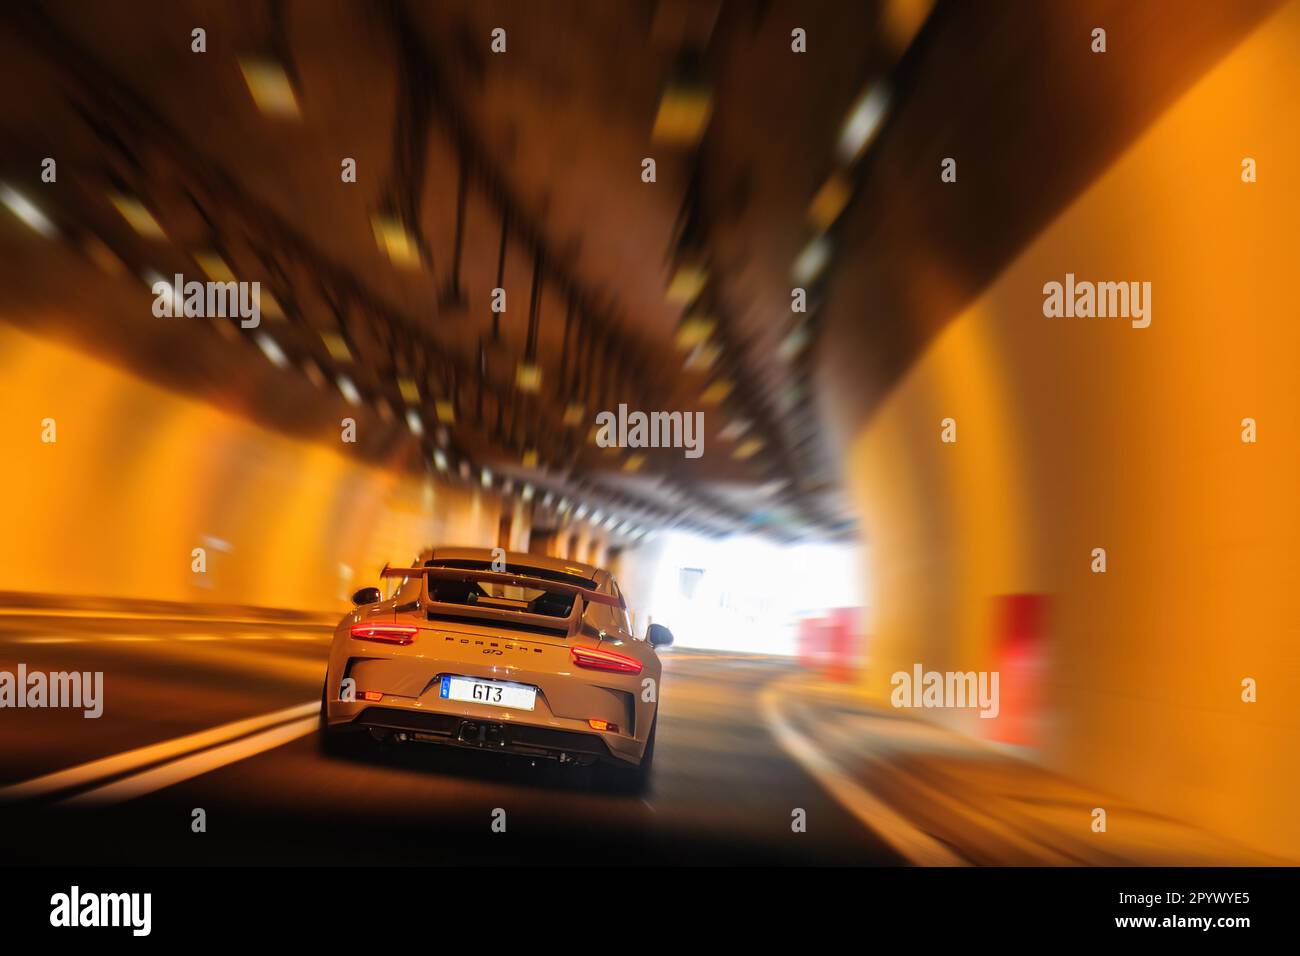 Voiture de sport la Porsche 911 GT3 haute puissance conduit lentement à vitesse rapide dans le tunnel routier Banque D'Images